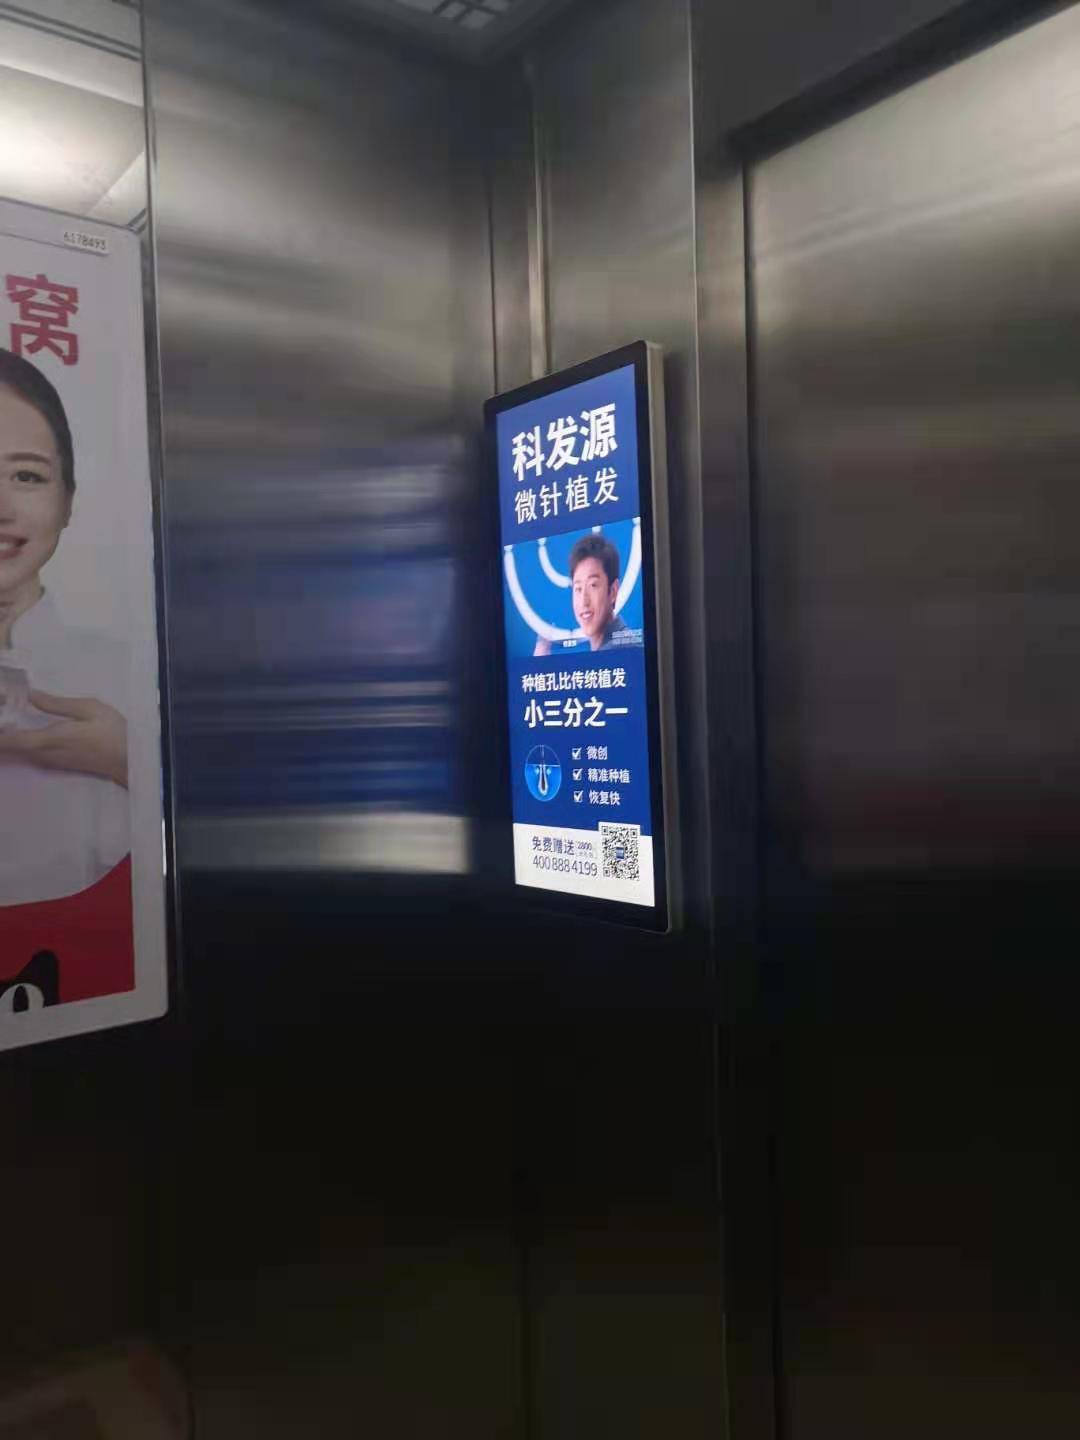 Как реклама в лифте может быстро привлечь внимание пользователей?